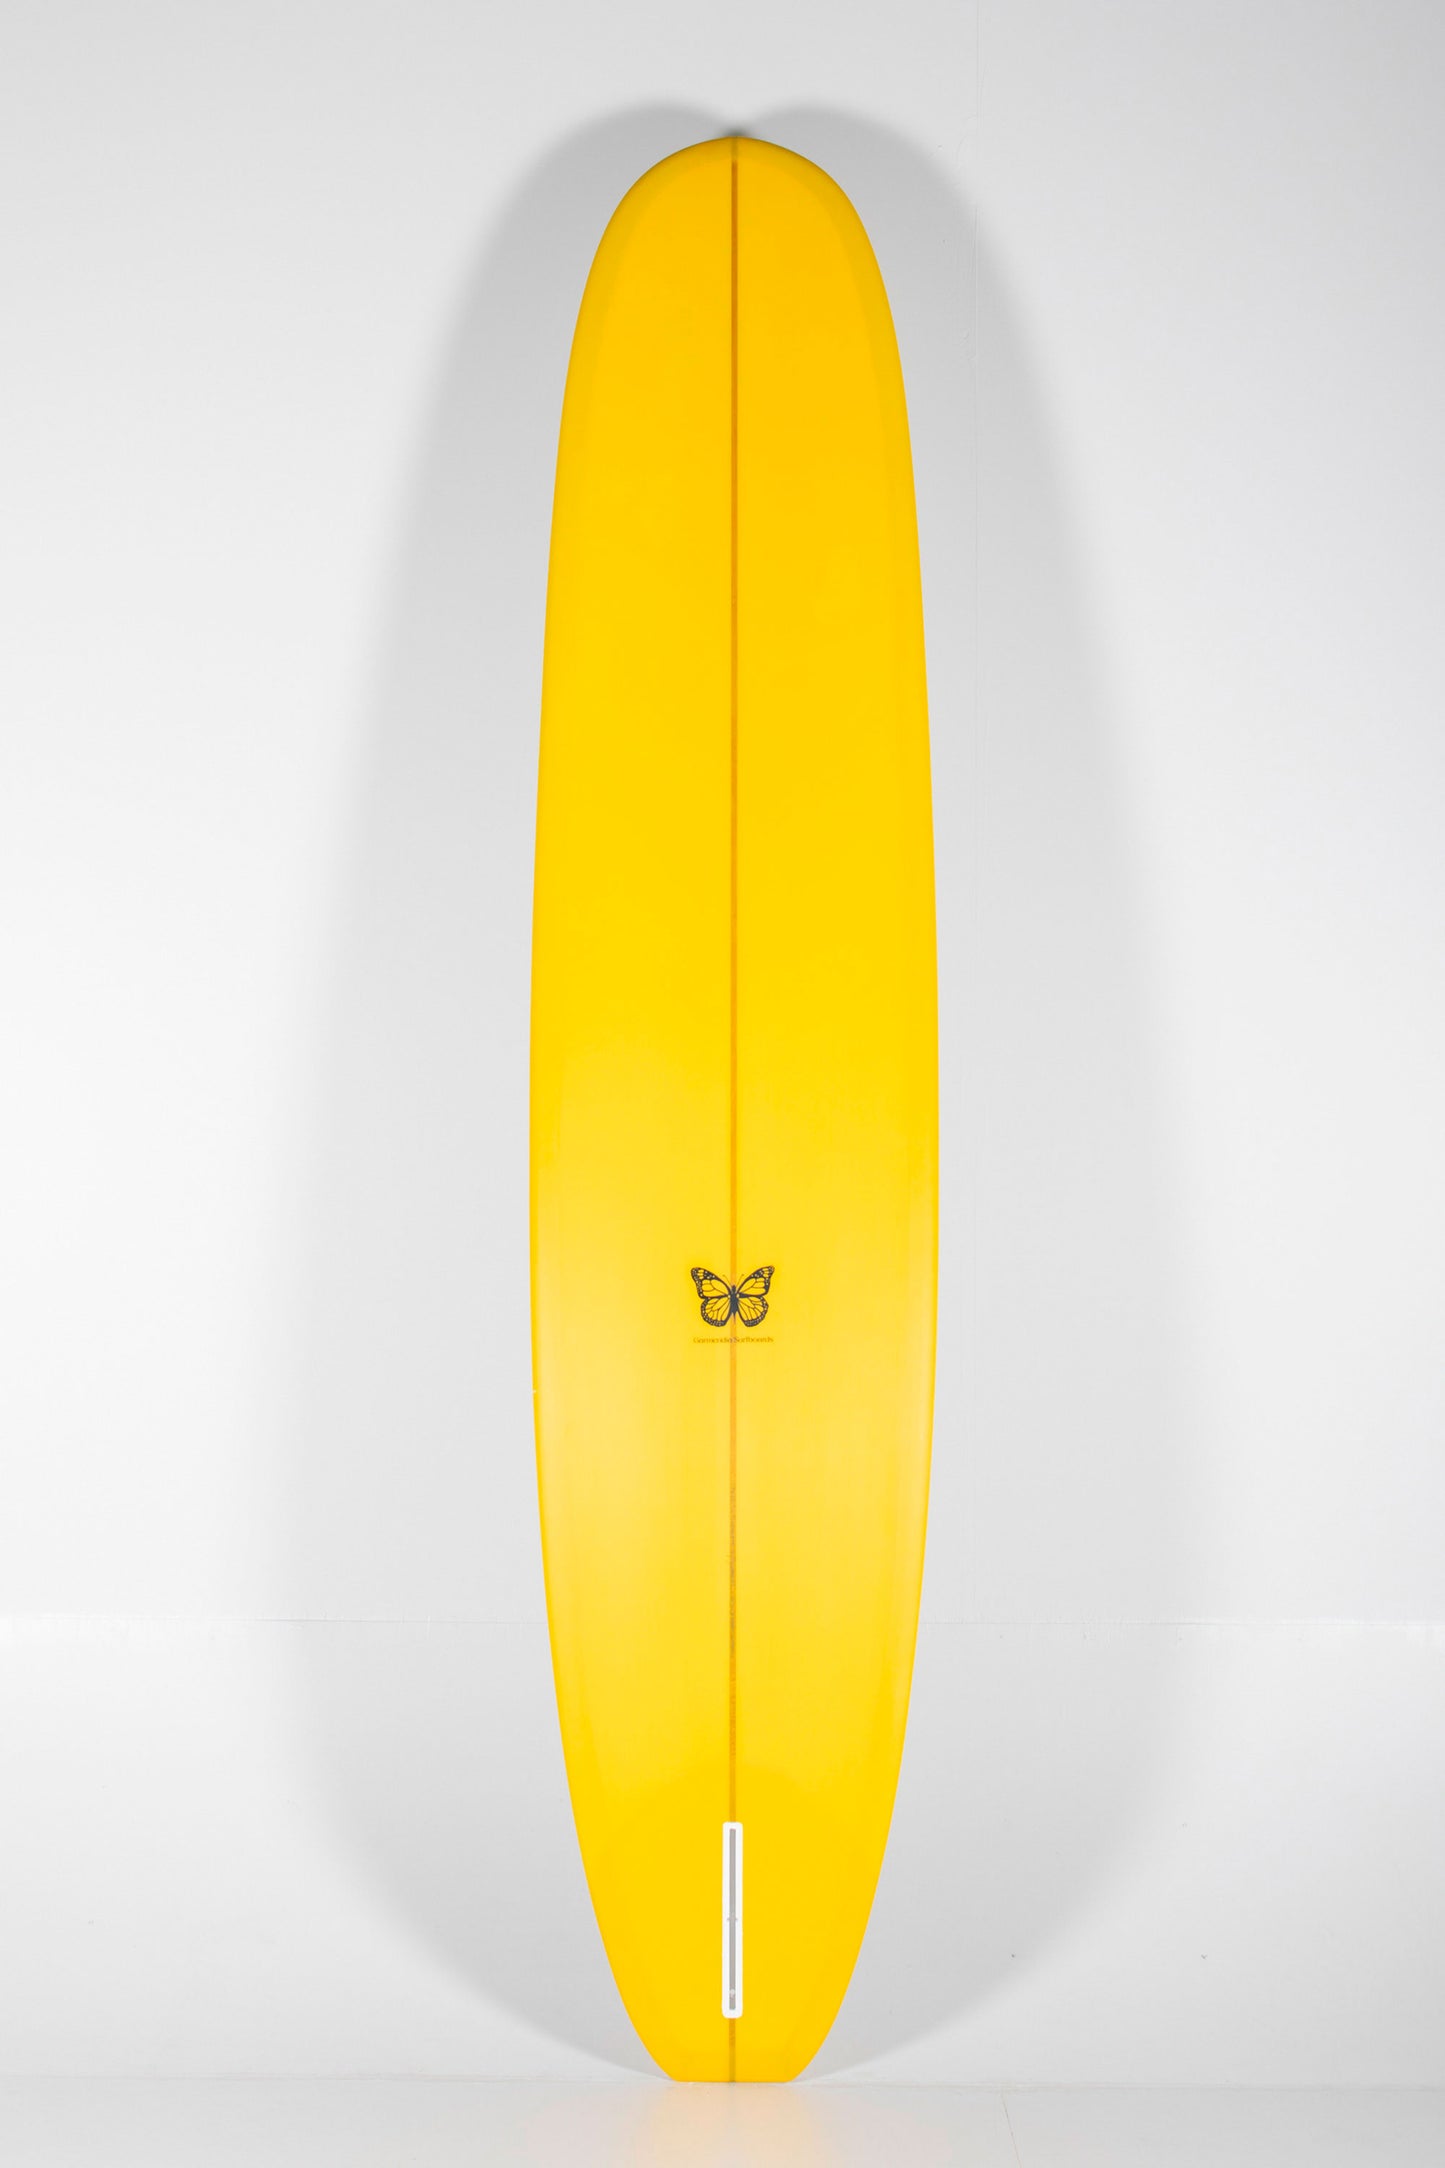 Garmendia Surfboards - NOSERIDER - 9'4" x 23 x 3 - Ref.NOSERIDER94NOV at Pukas Surf Shop